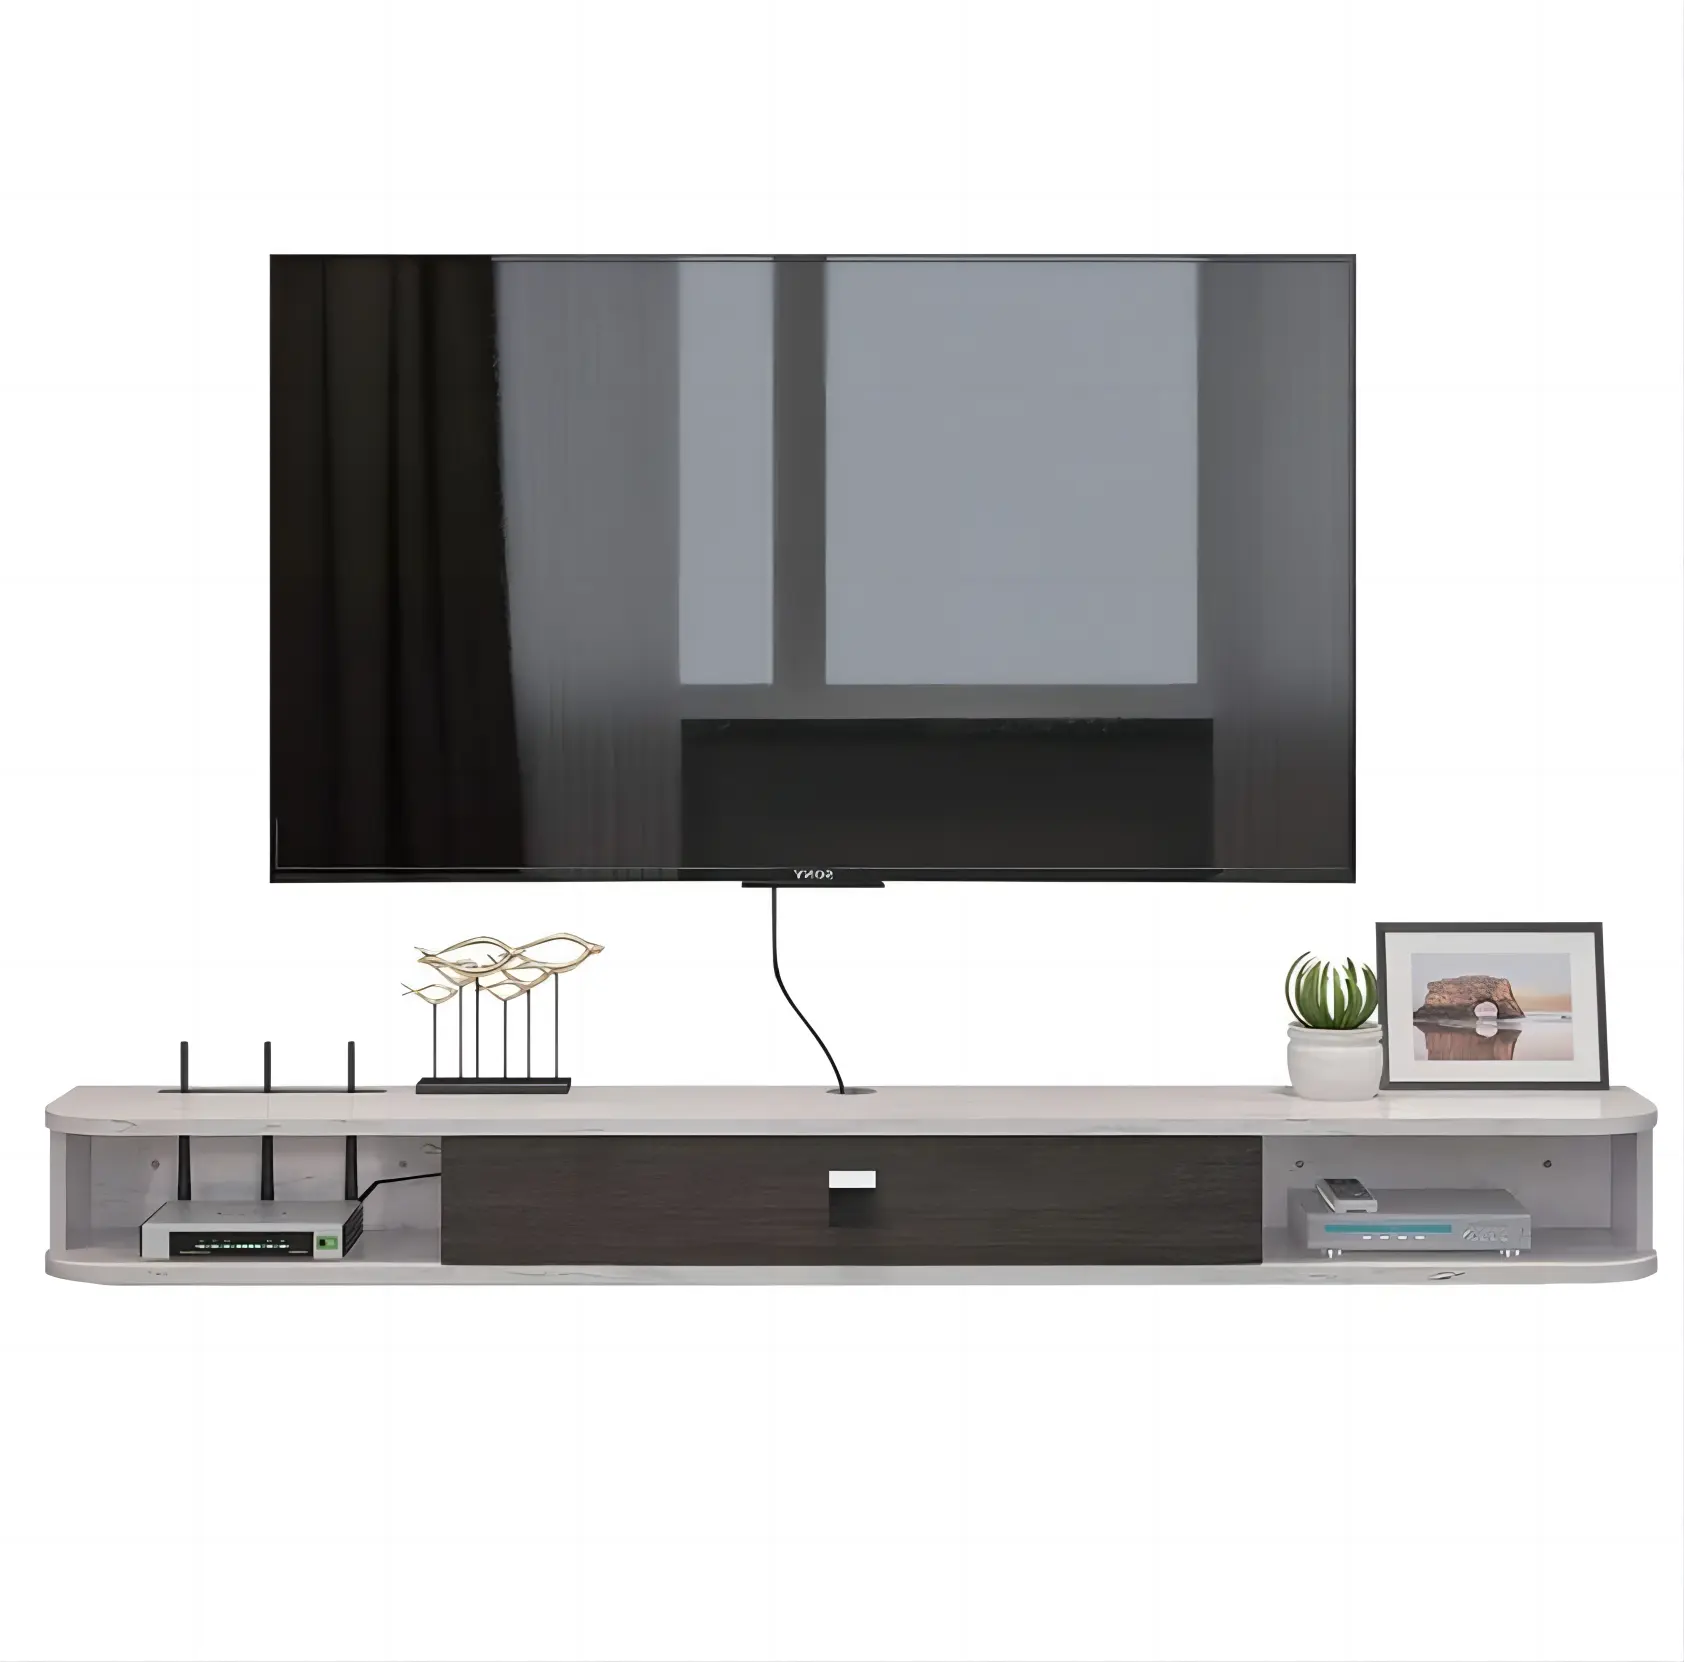 Moderno suporte de TV para sala de estar, prateleira flutuante de madeira maciça preto e branco, móveis para armários e móveis com portas de armazenamento